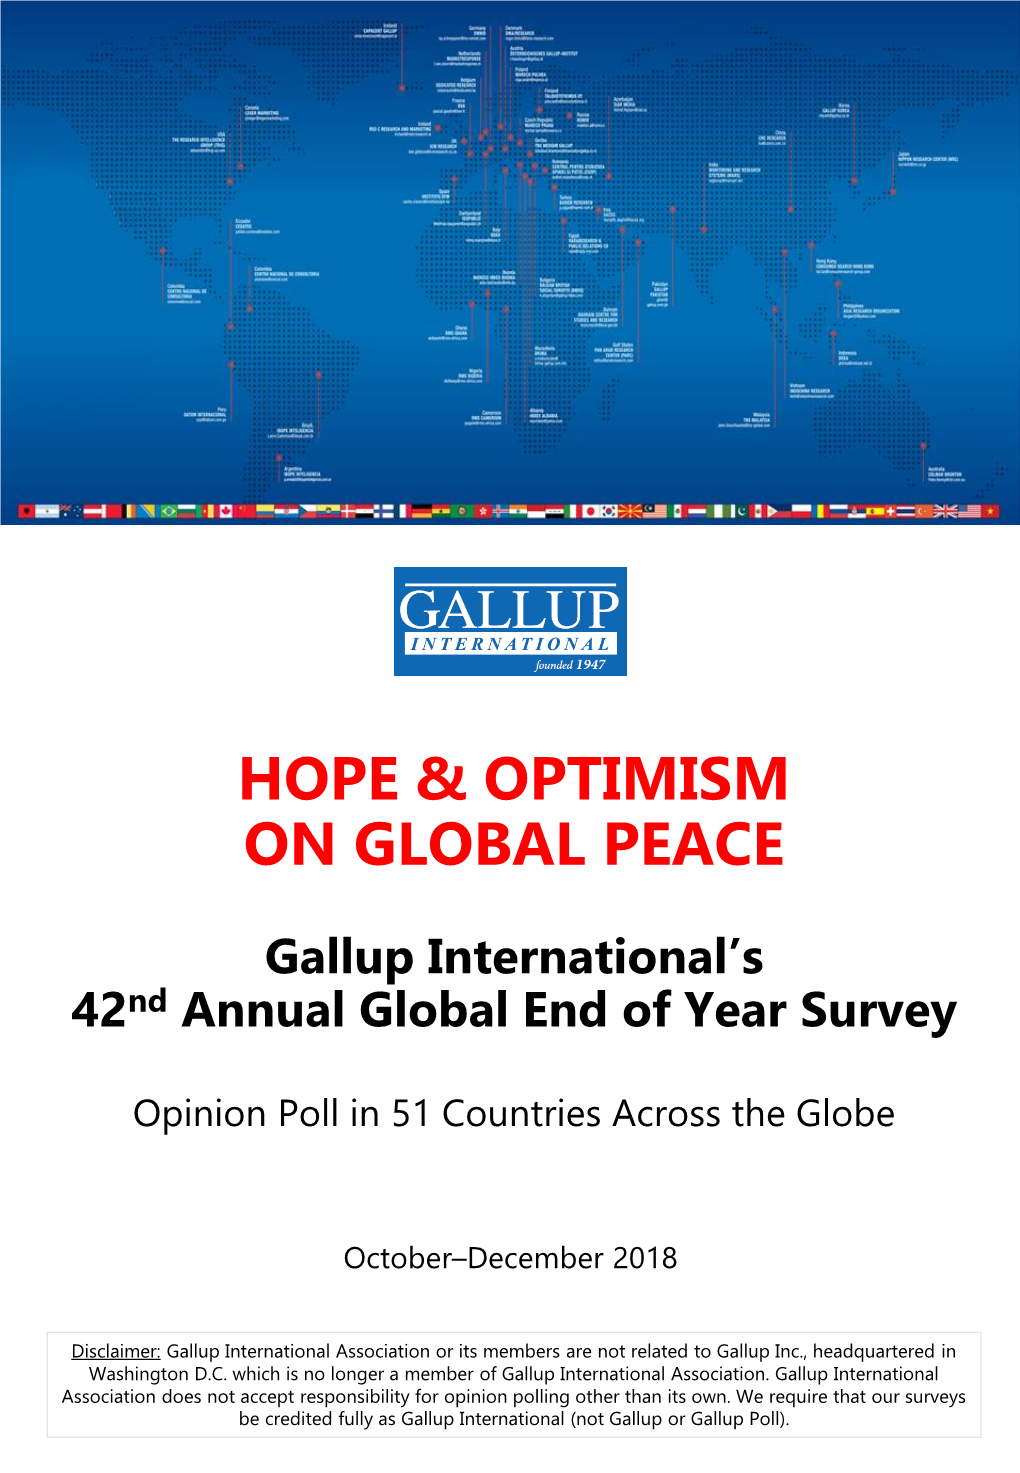 Hope & Optimism on Global Peace